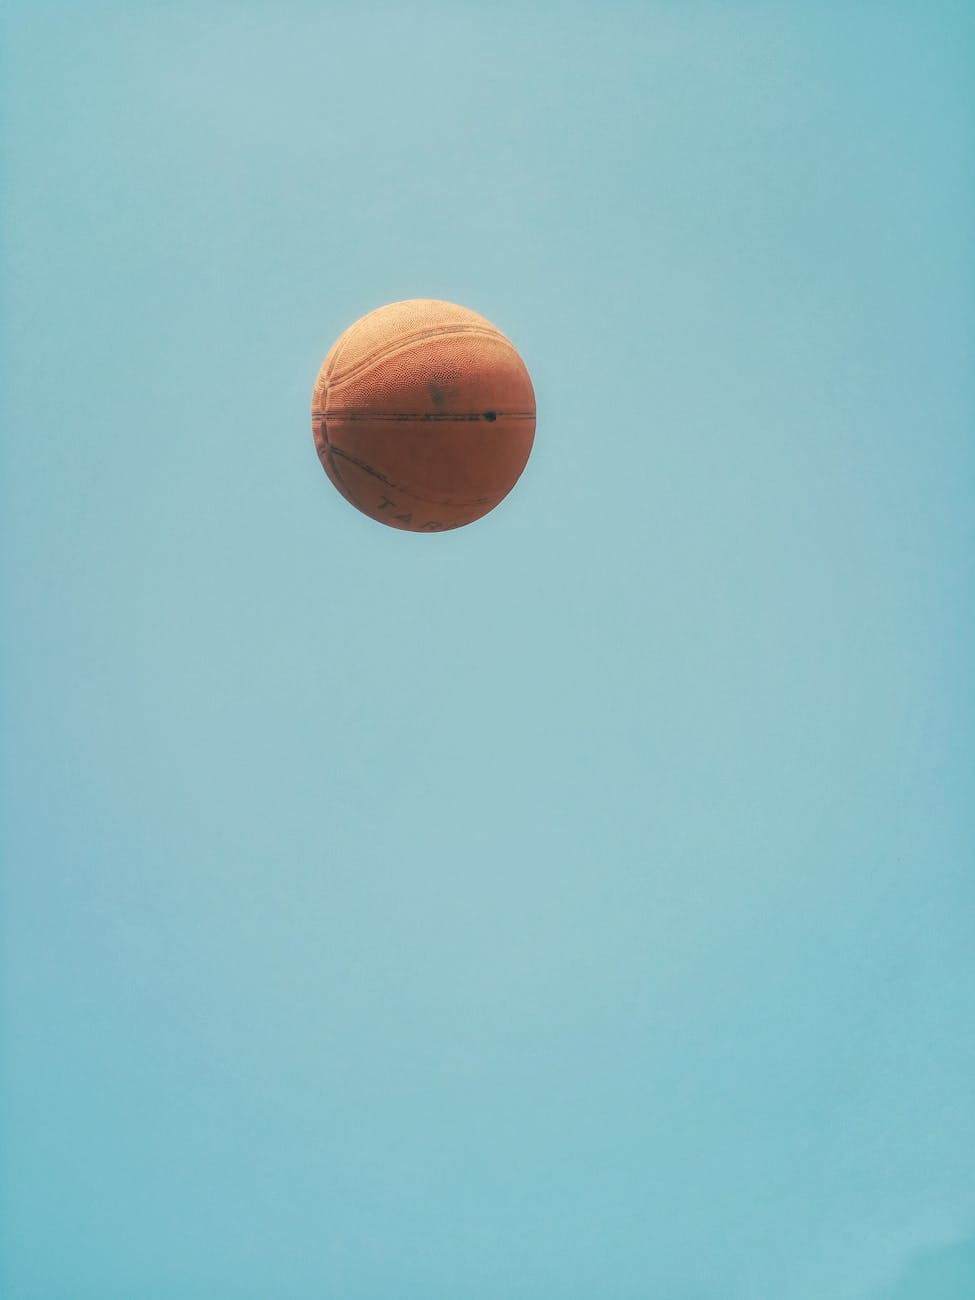 brown basketball on blue sky